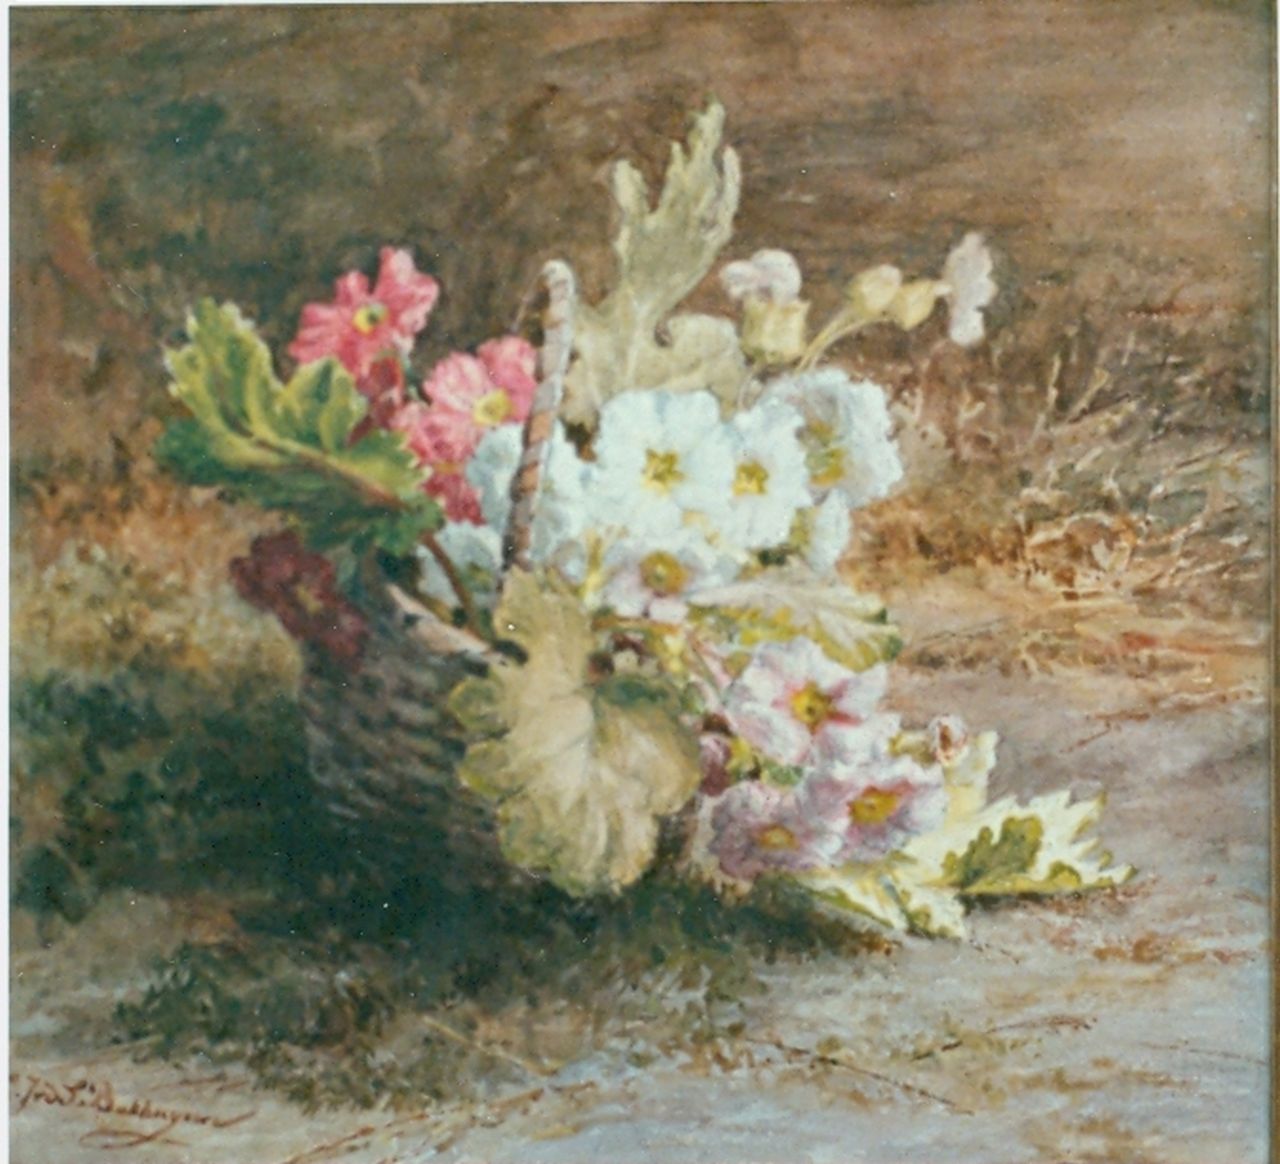 Sande Bakhuyzen G.J. van de | 'Gerardine' Jacoba van de Sande Bakhuyzen, Flowers in a basket, Aquarell auf Papier 44,5 x 37,3 cm, signed l.l.